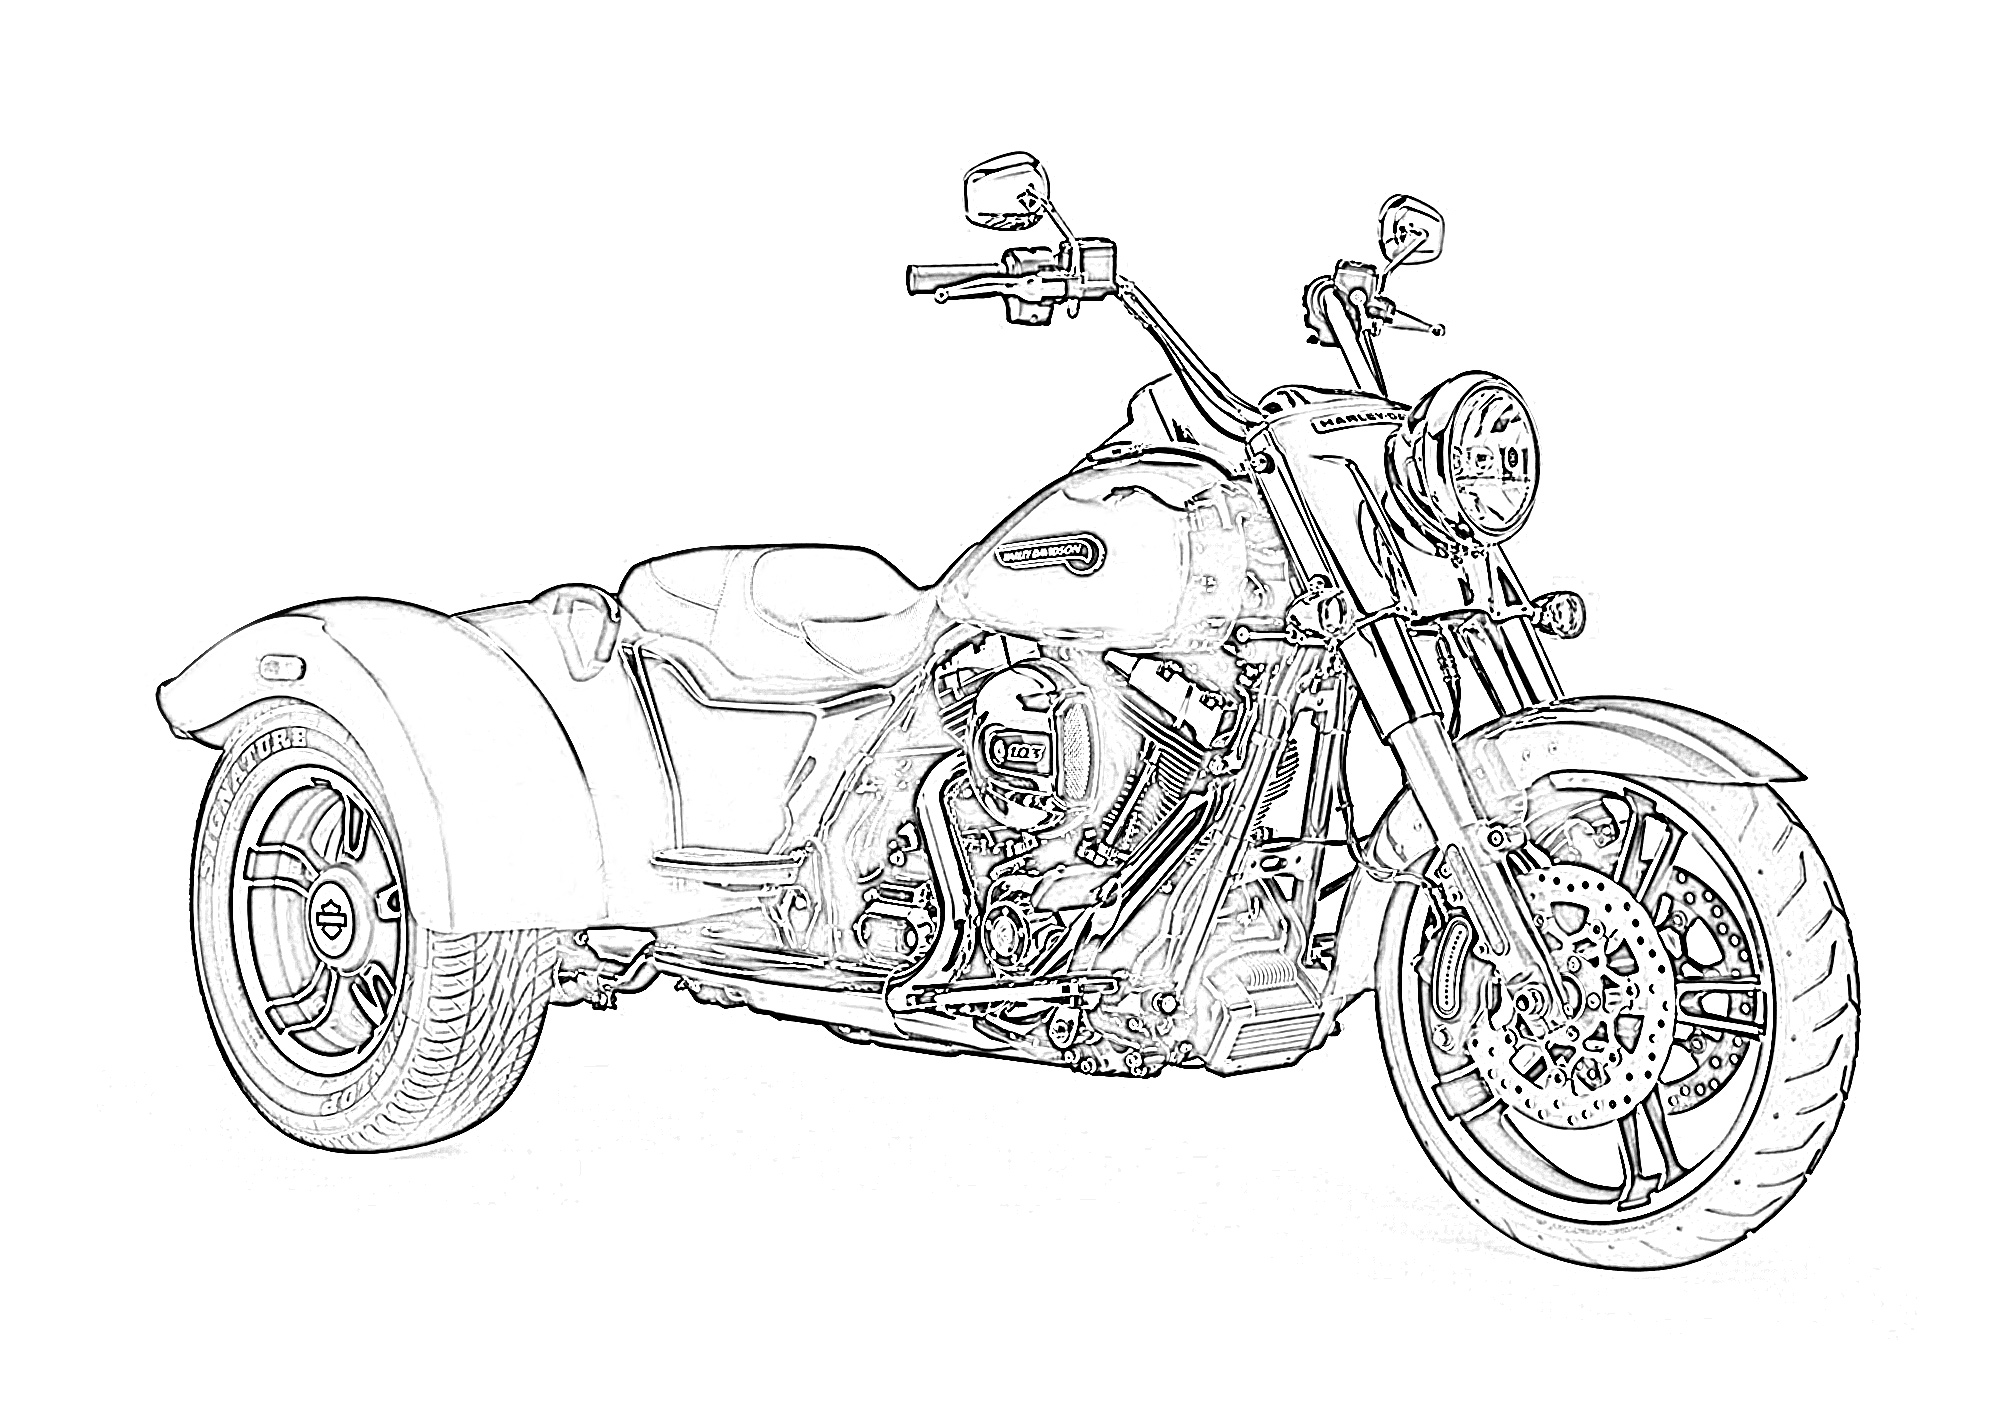 Harley Davidson 103 trike coloring page